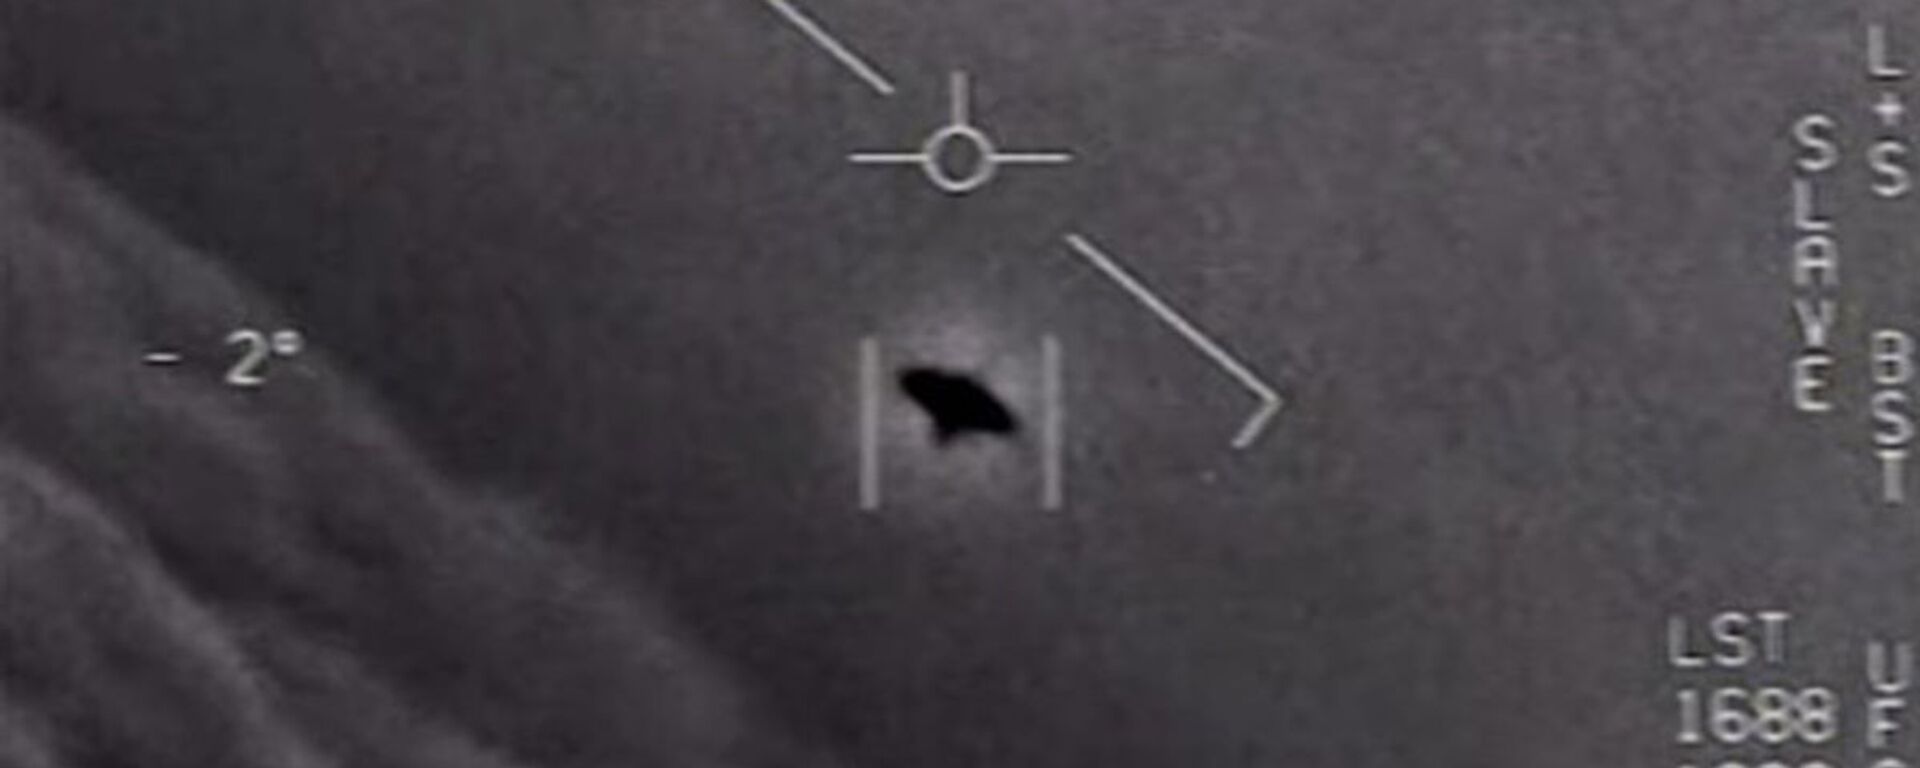 ペンタゴン UFO - Sputnik 日本, 1920, 17.05.2021